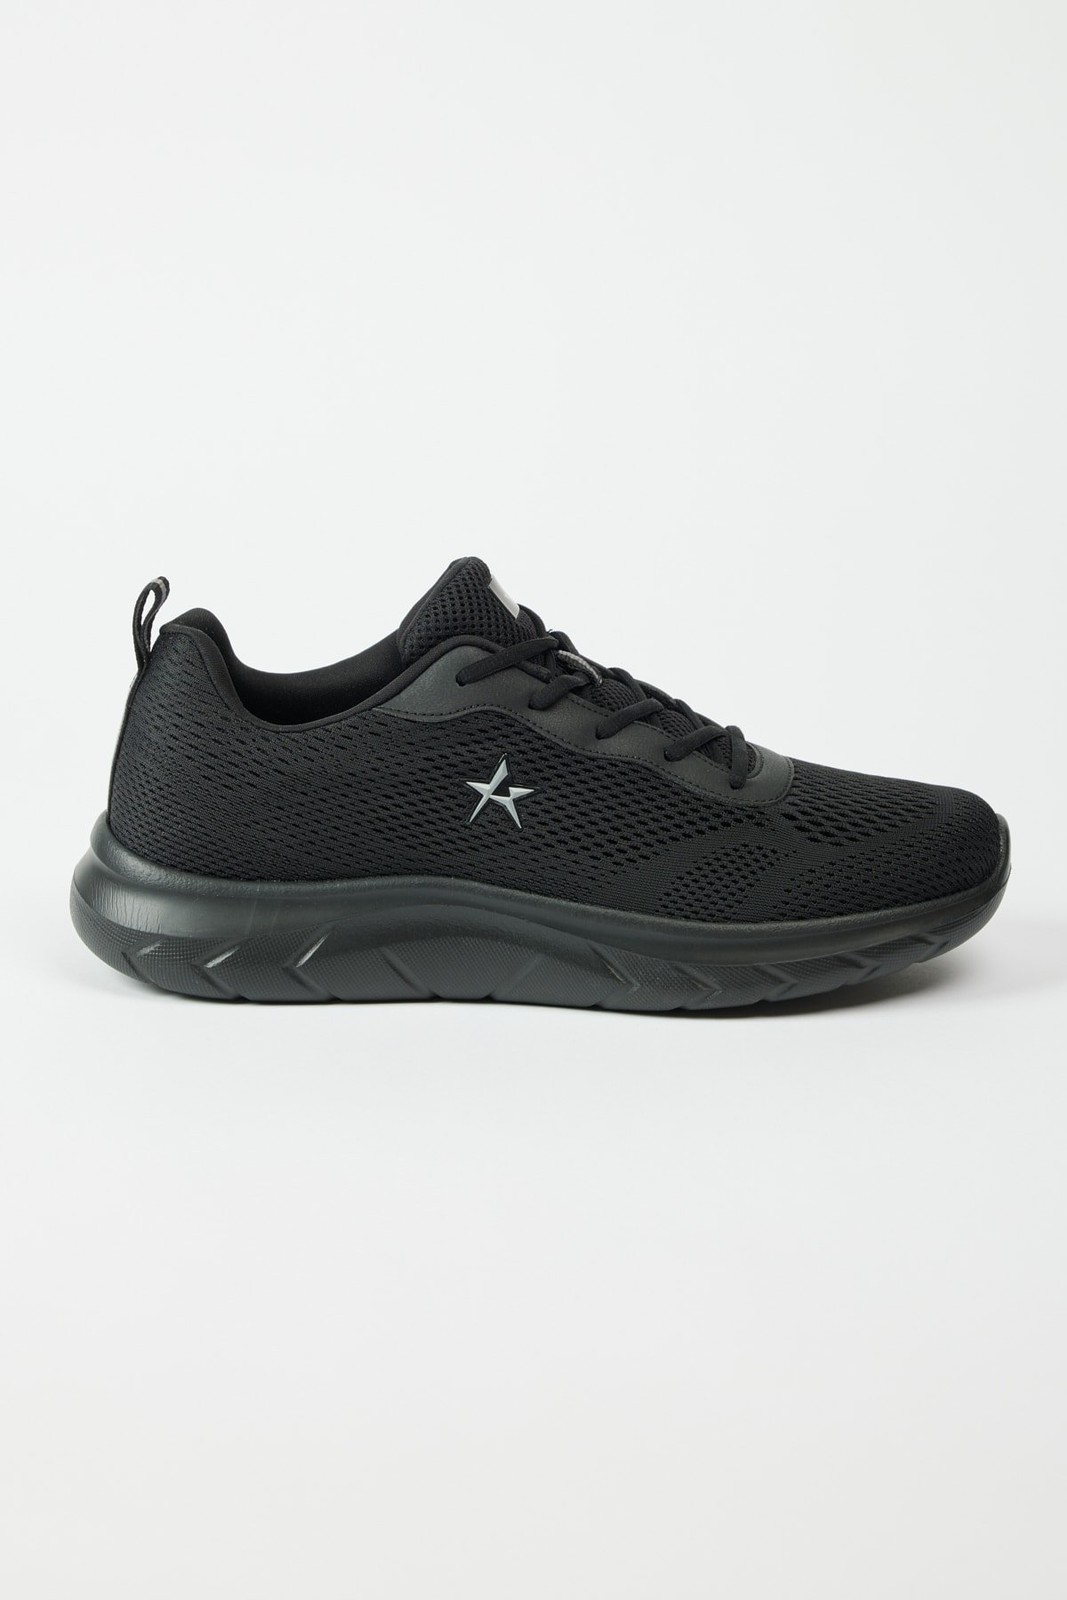 ALTINYILDIZ CLASSICS Men's Black Comfortable Sole Sneaker Sports Shoes